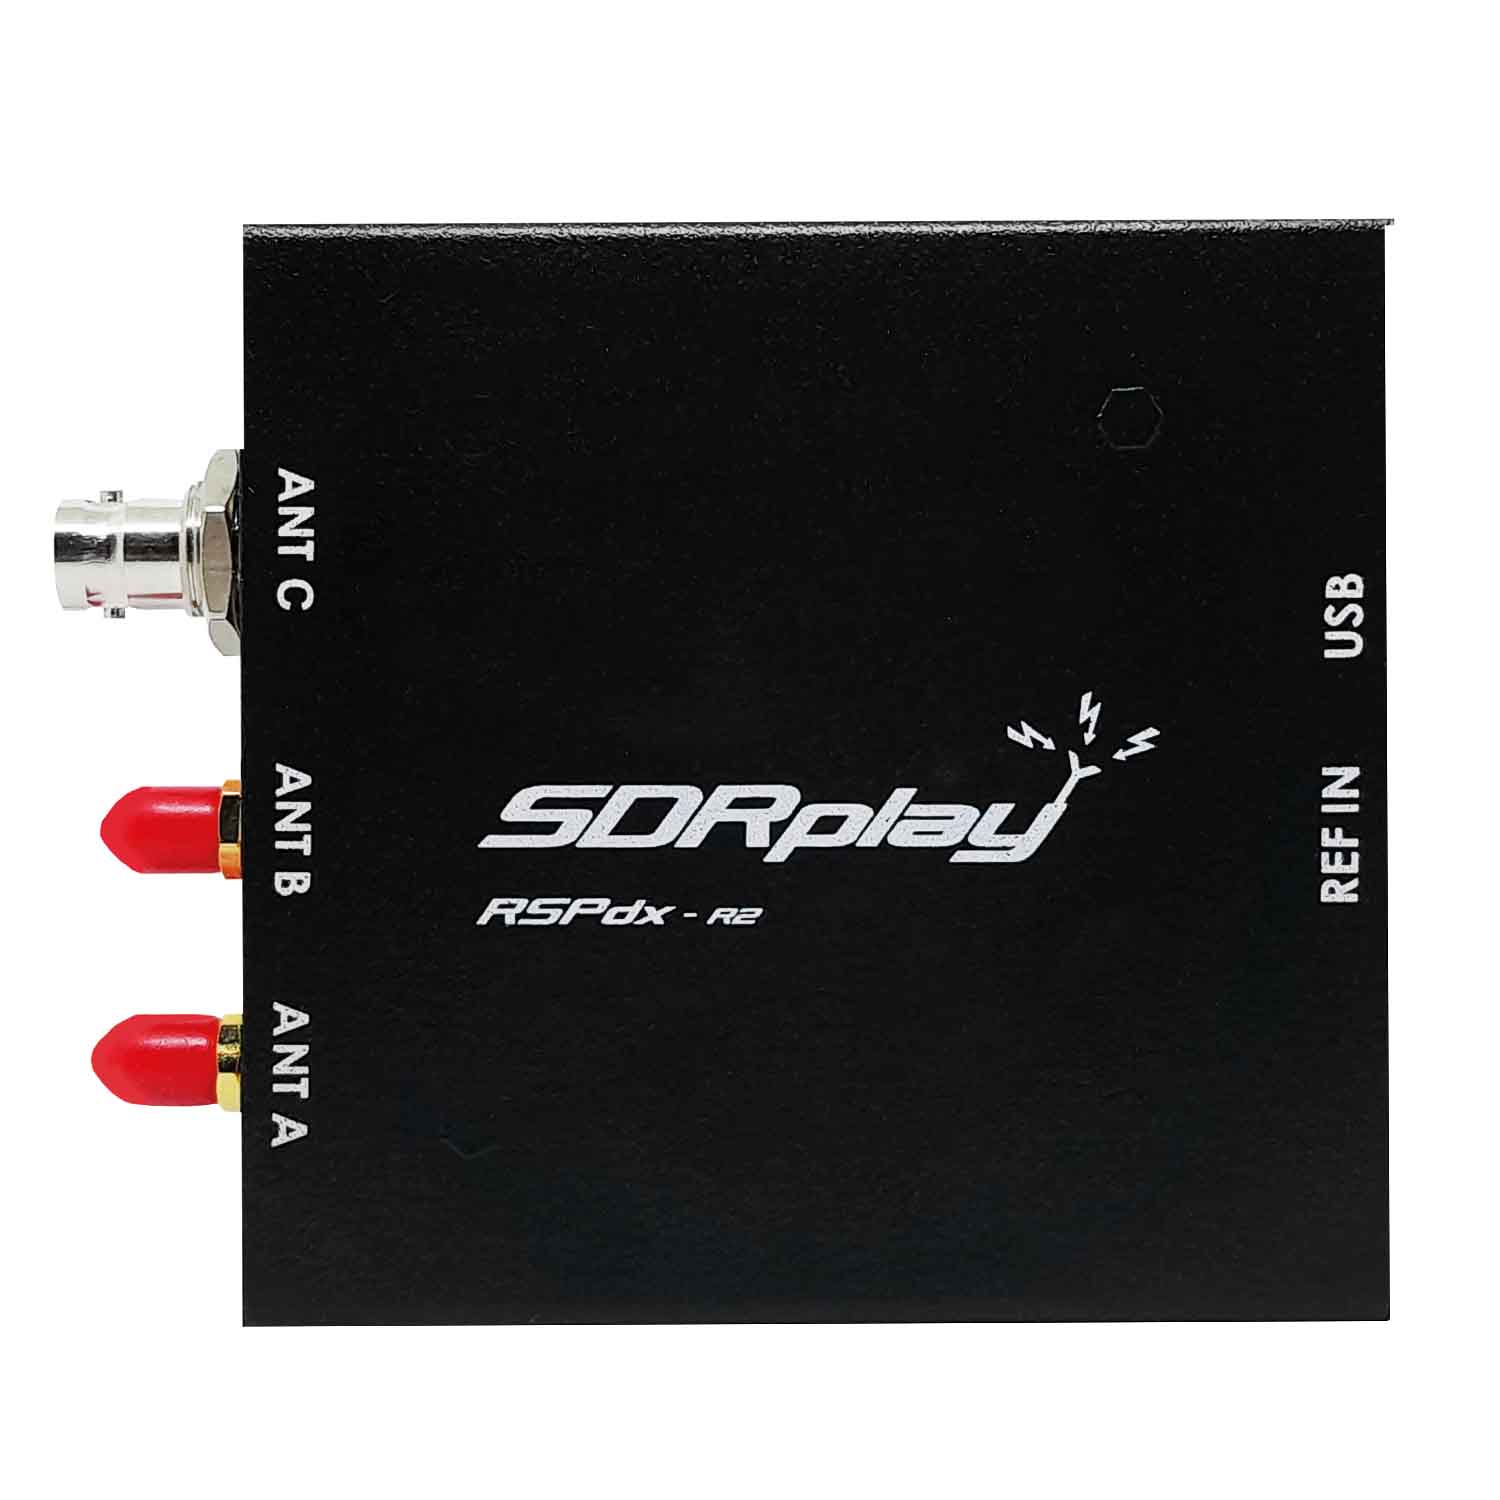 SDRplay RSPdx-R2 SDR-Empfänger 1 kHz bis 2 GHz